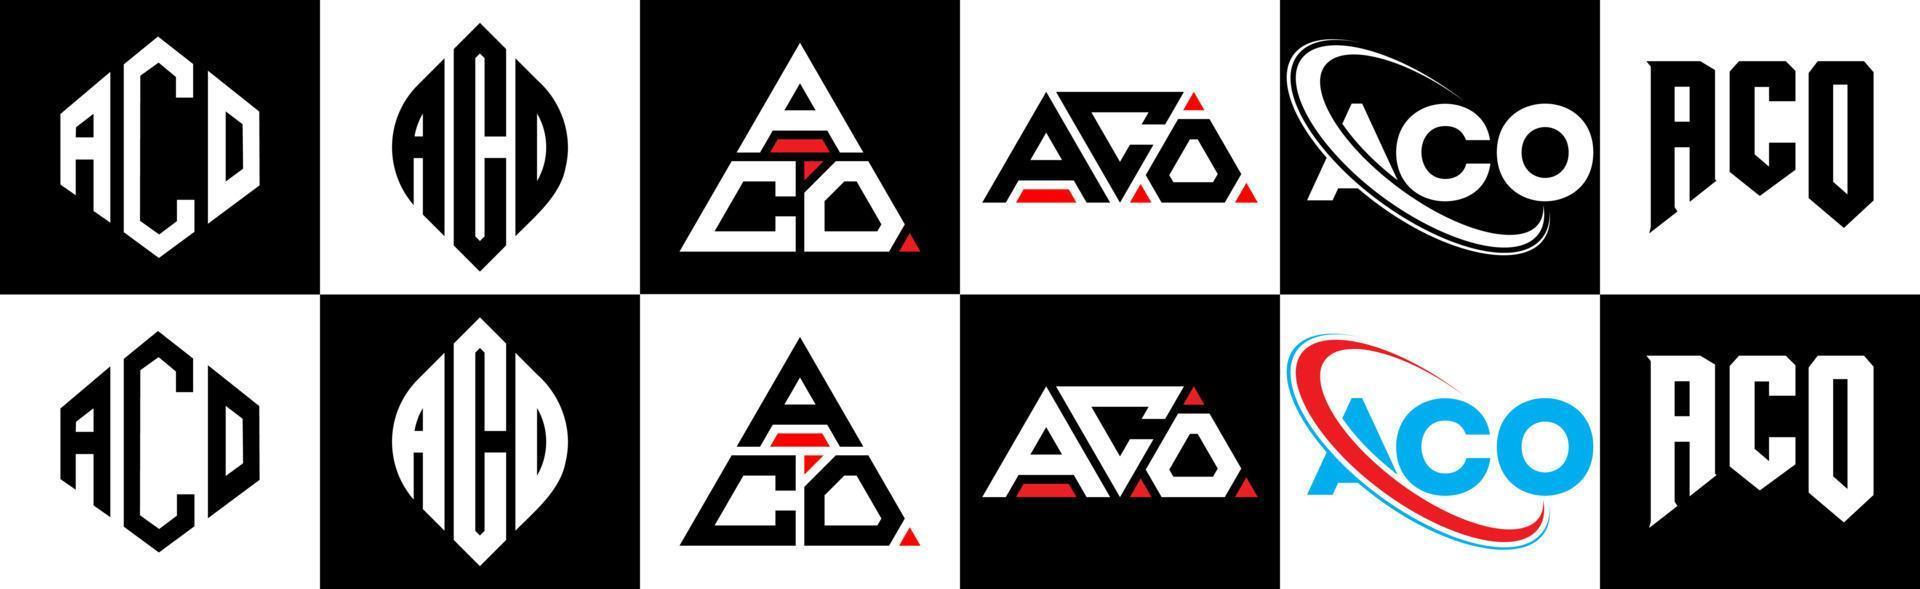 aco brief logo ontwerp in zes stijl. aco veelhoek, cirkel, driehoek, zeshoek, vlak en gemakkelijk stijl met zwart en wit kleur variatie brief logo reeks in een tekengebied. aco minimalistische en klassiek logo vector